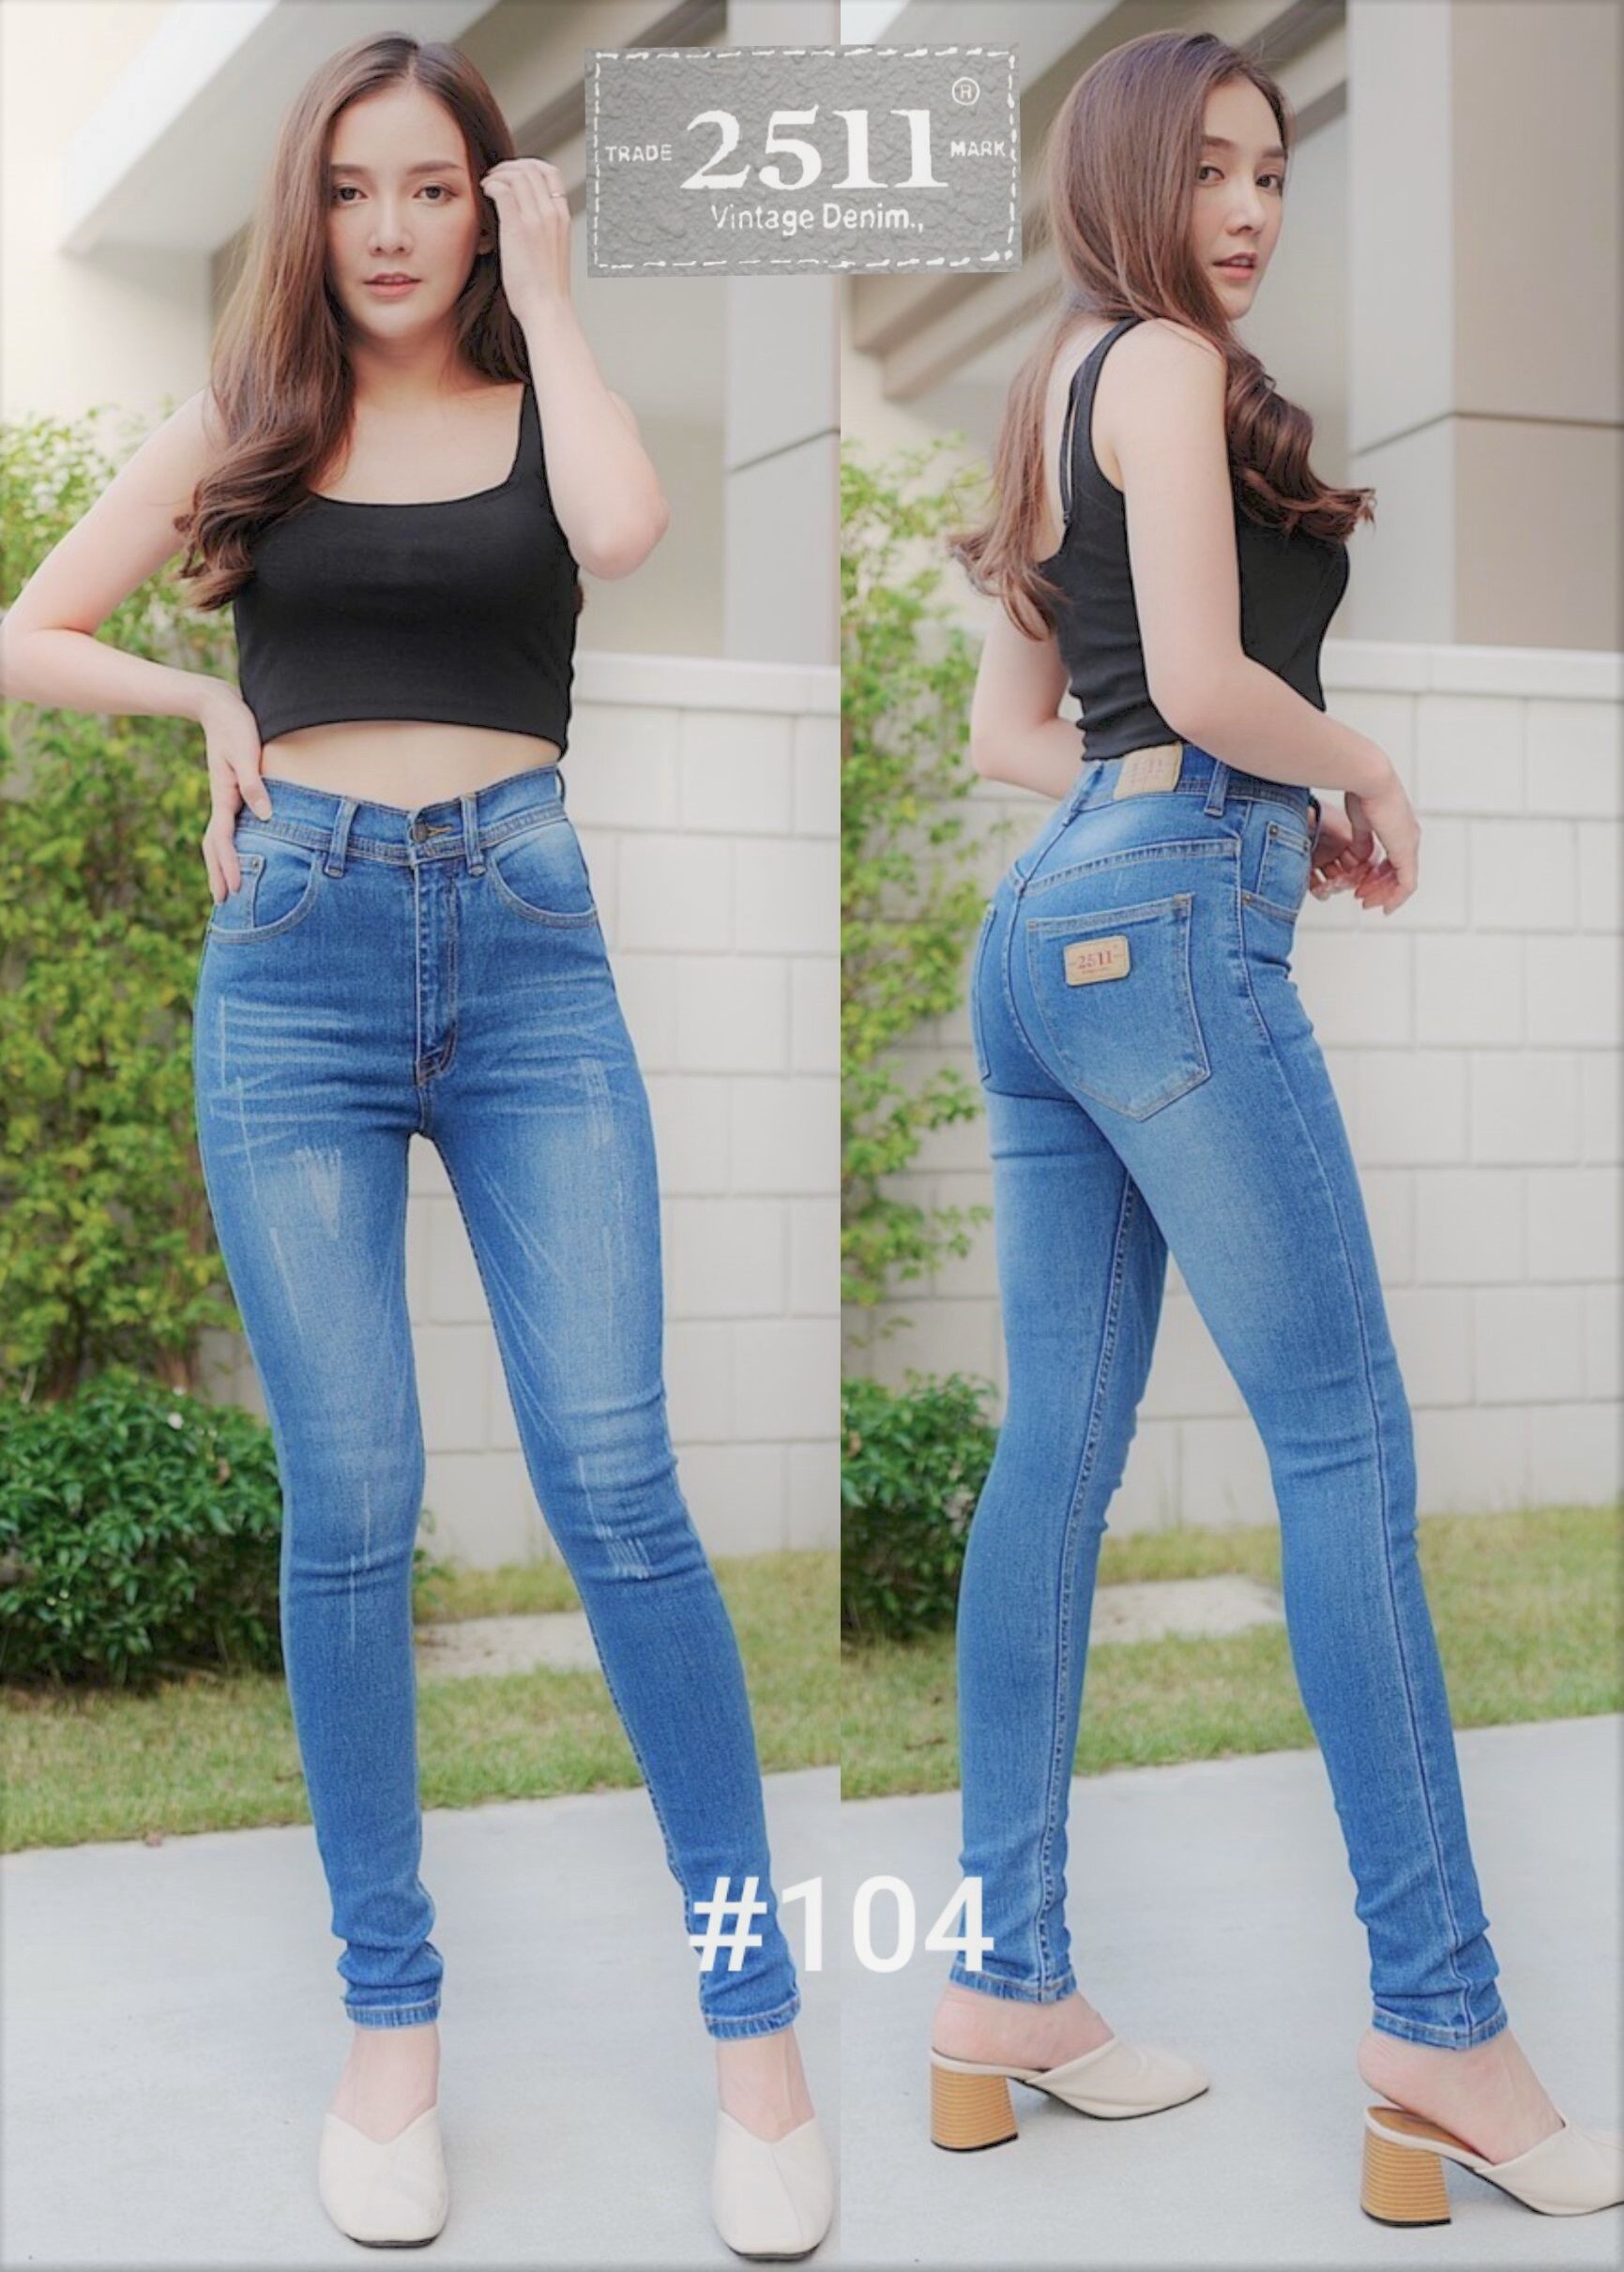 2511 Vintage Denim Jeans by GREATกางเกงยีนส์ ผญ กางเกงยีนส์ กางเกงยีนส์ยืด กางเกงยีนส์ เอวสูง ยีนส์เอวสูง กางเกงแฟชั่นผู้หญิง มี5สีให้เลือก